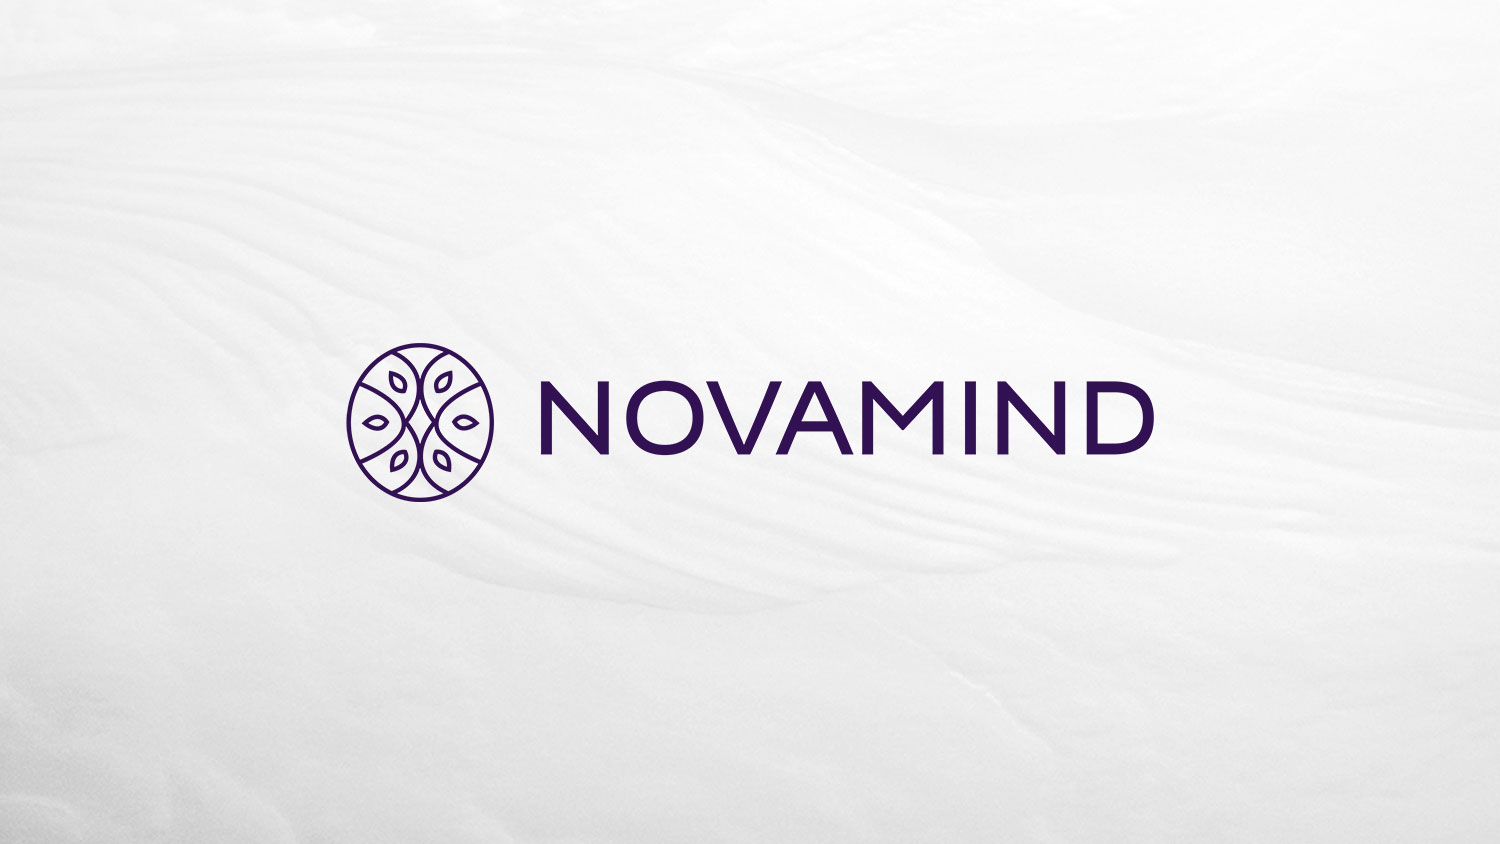 novamind stock symbol